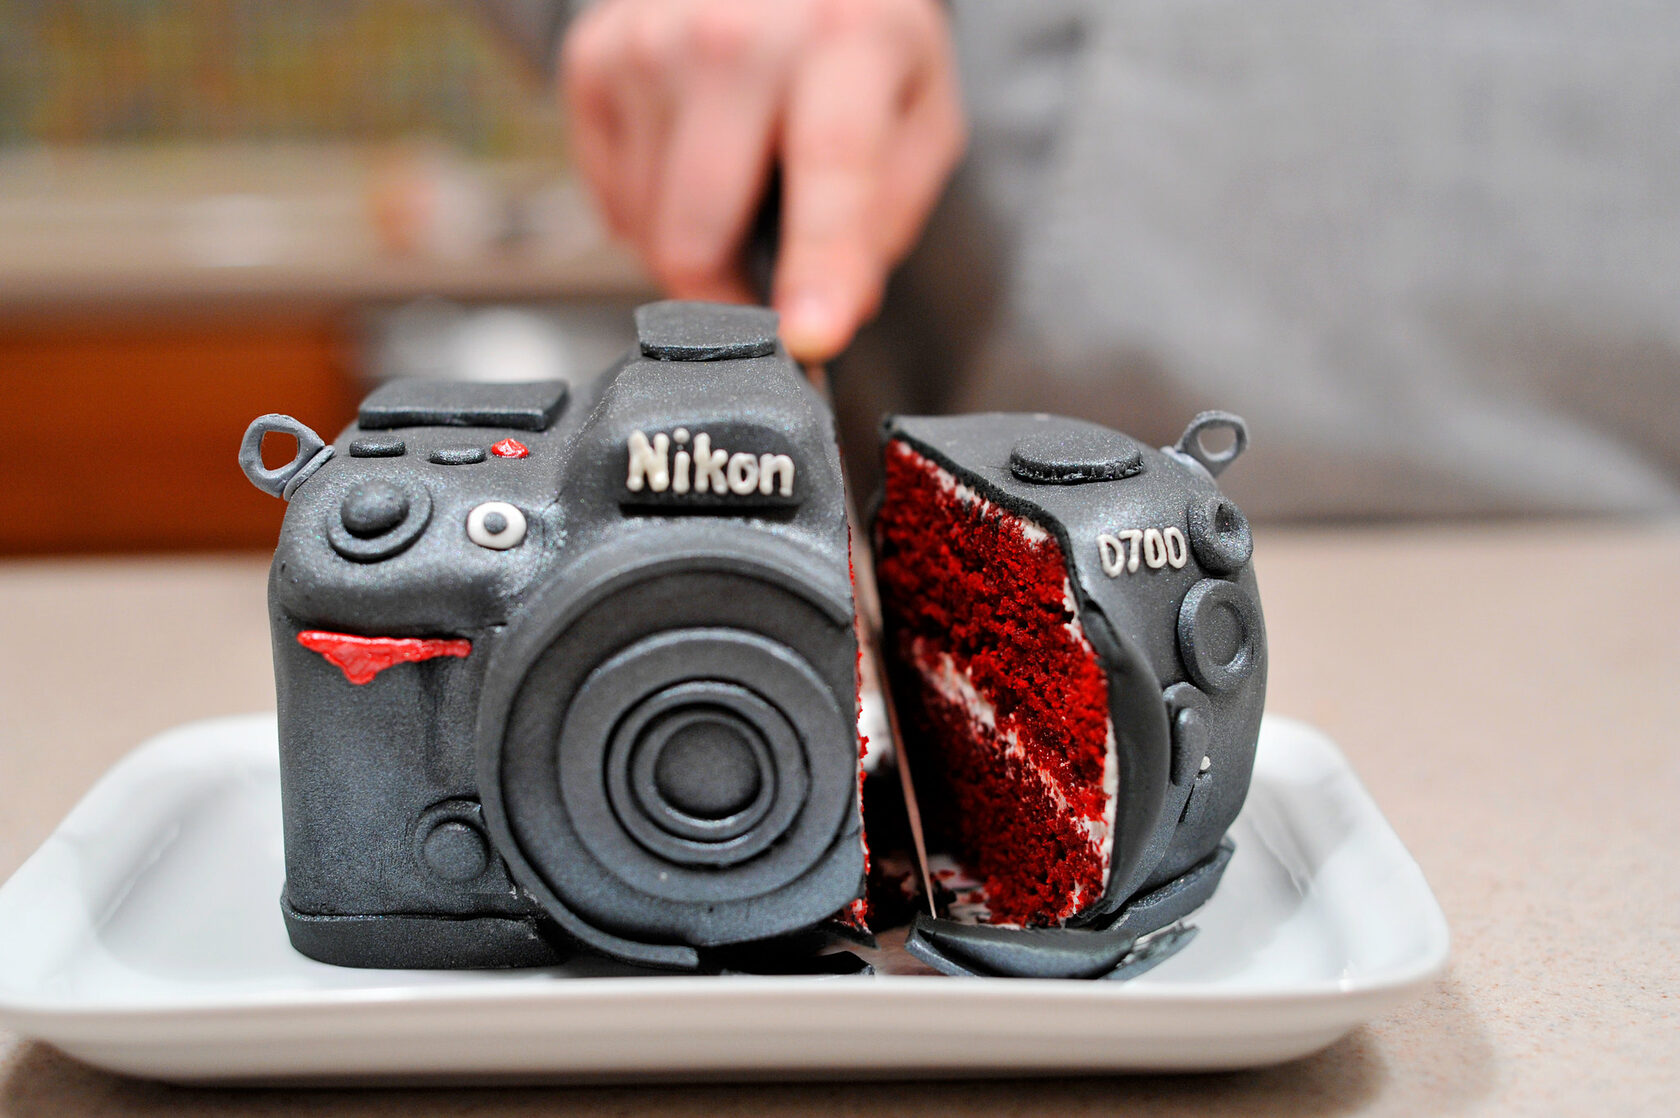 Торт в виде фотоаппарата - прекрасный и весьма креативный подарок для фотографа